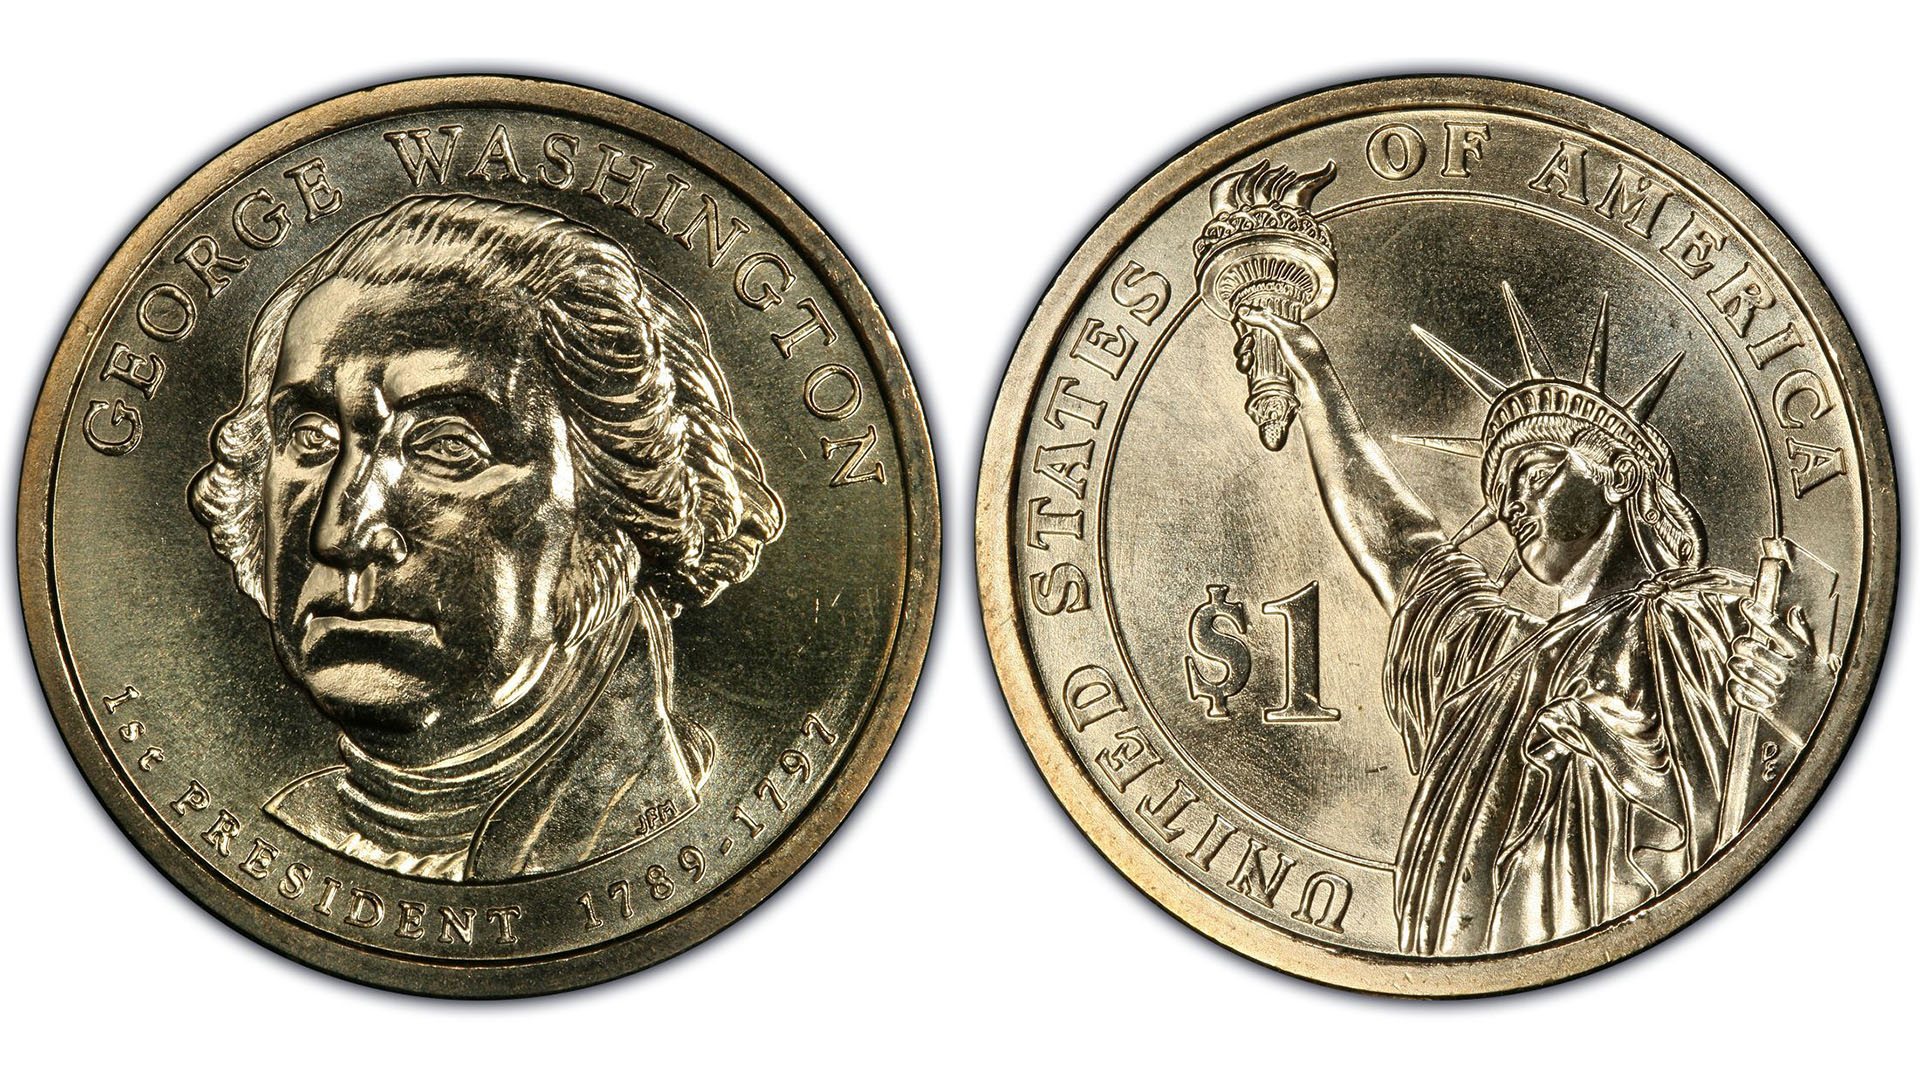 Algunas ediciones de monedas de dólar salieron a la calle con un olvido: nadie se acordó de grabarles "In God we Trust". Fuente: PCGS